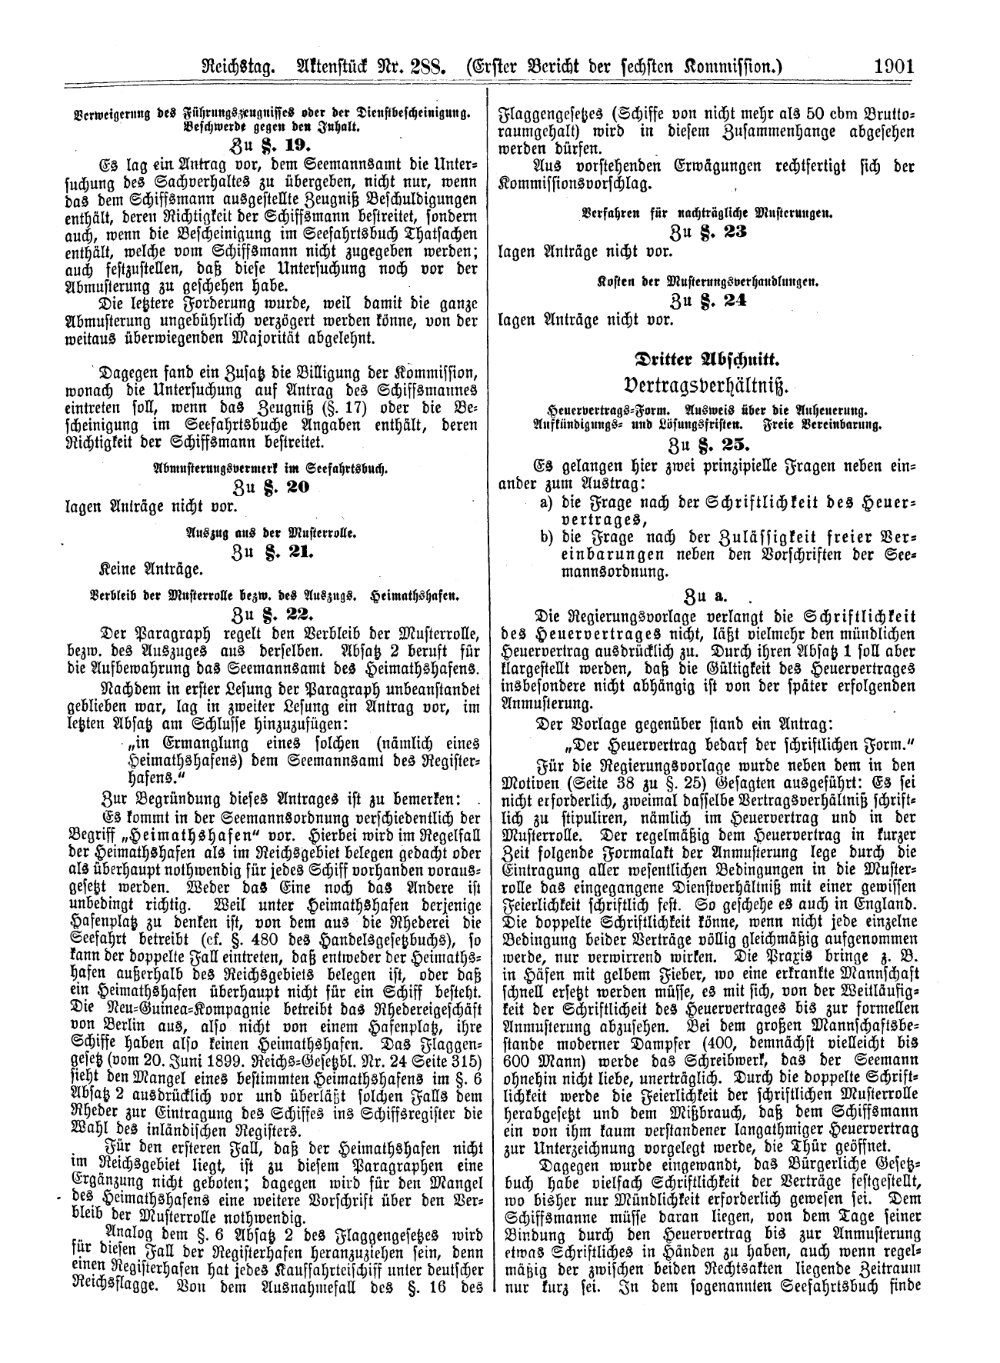 Scan der Seite 1901